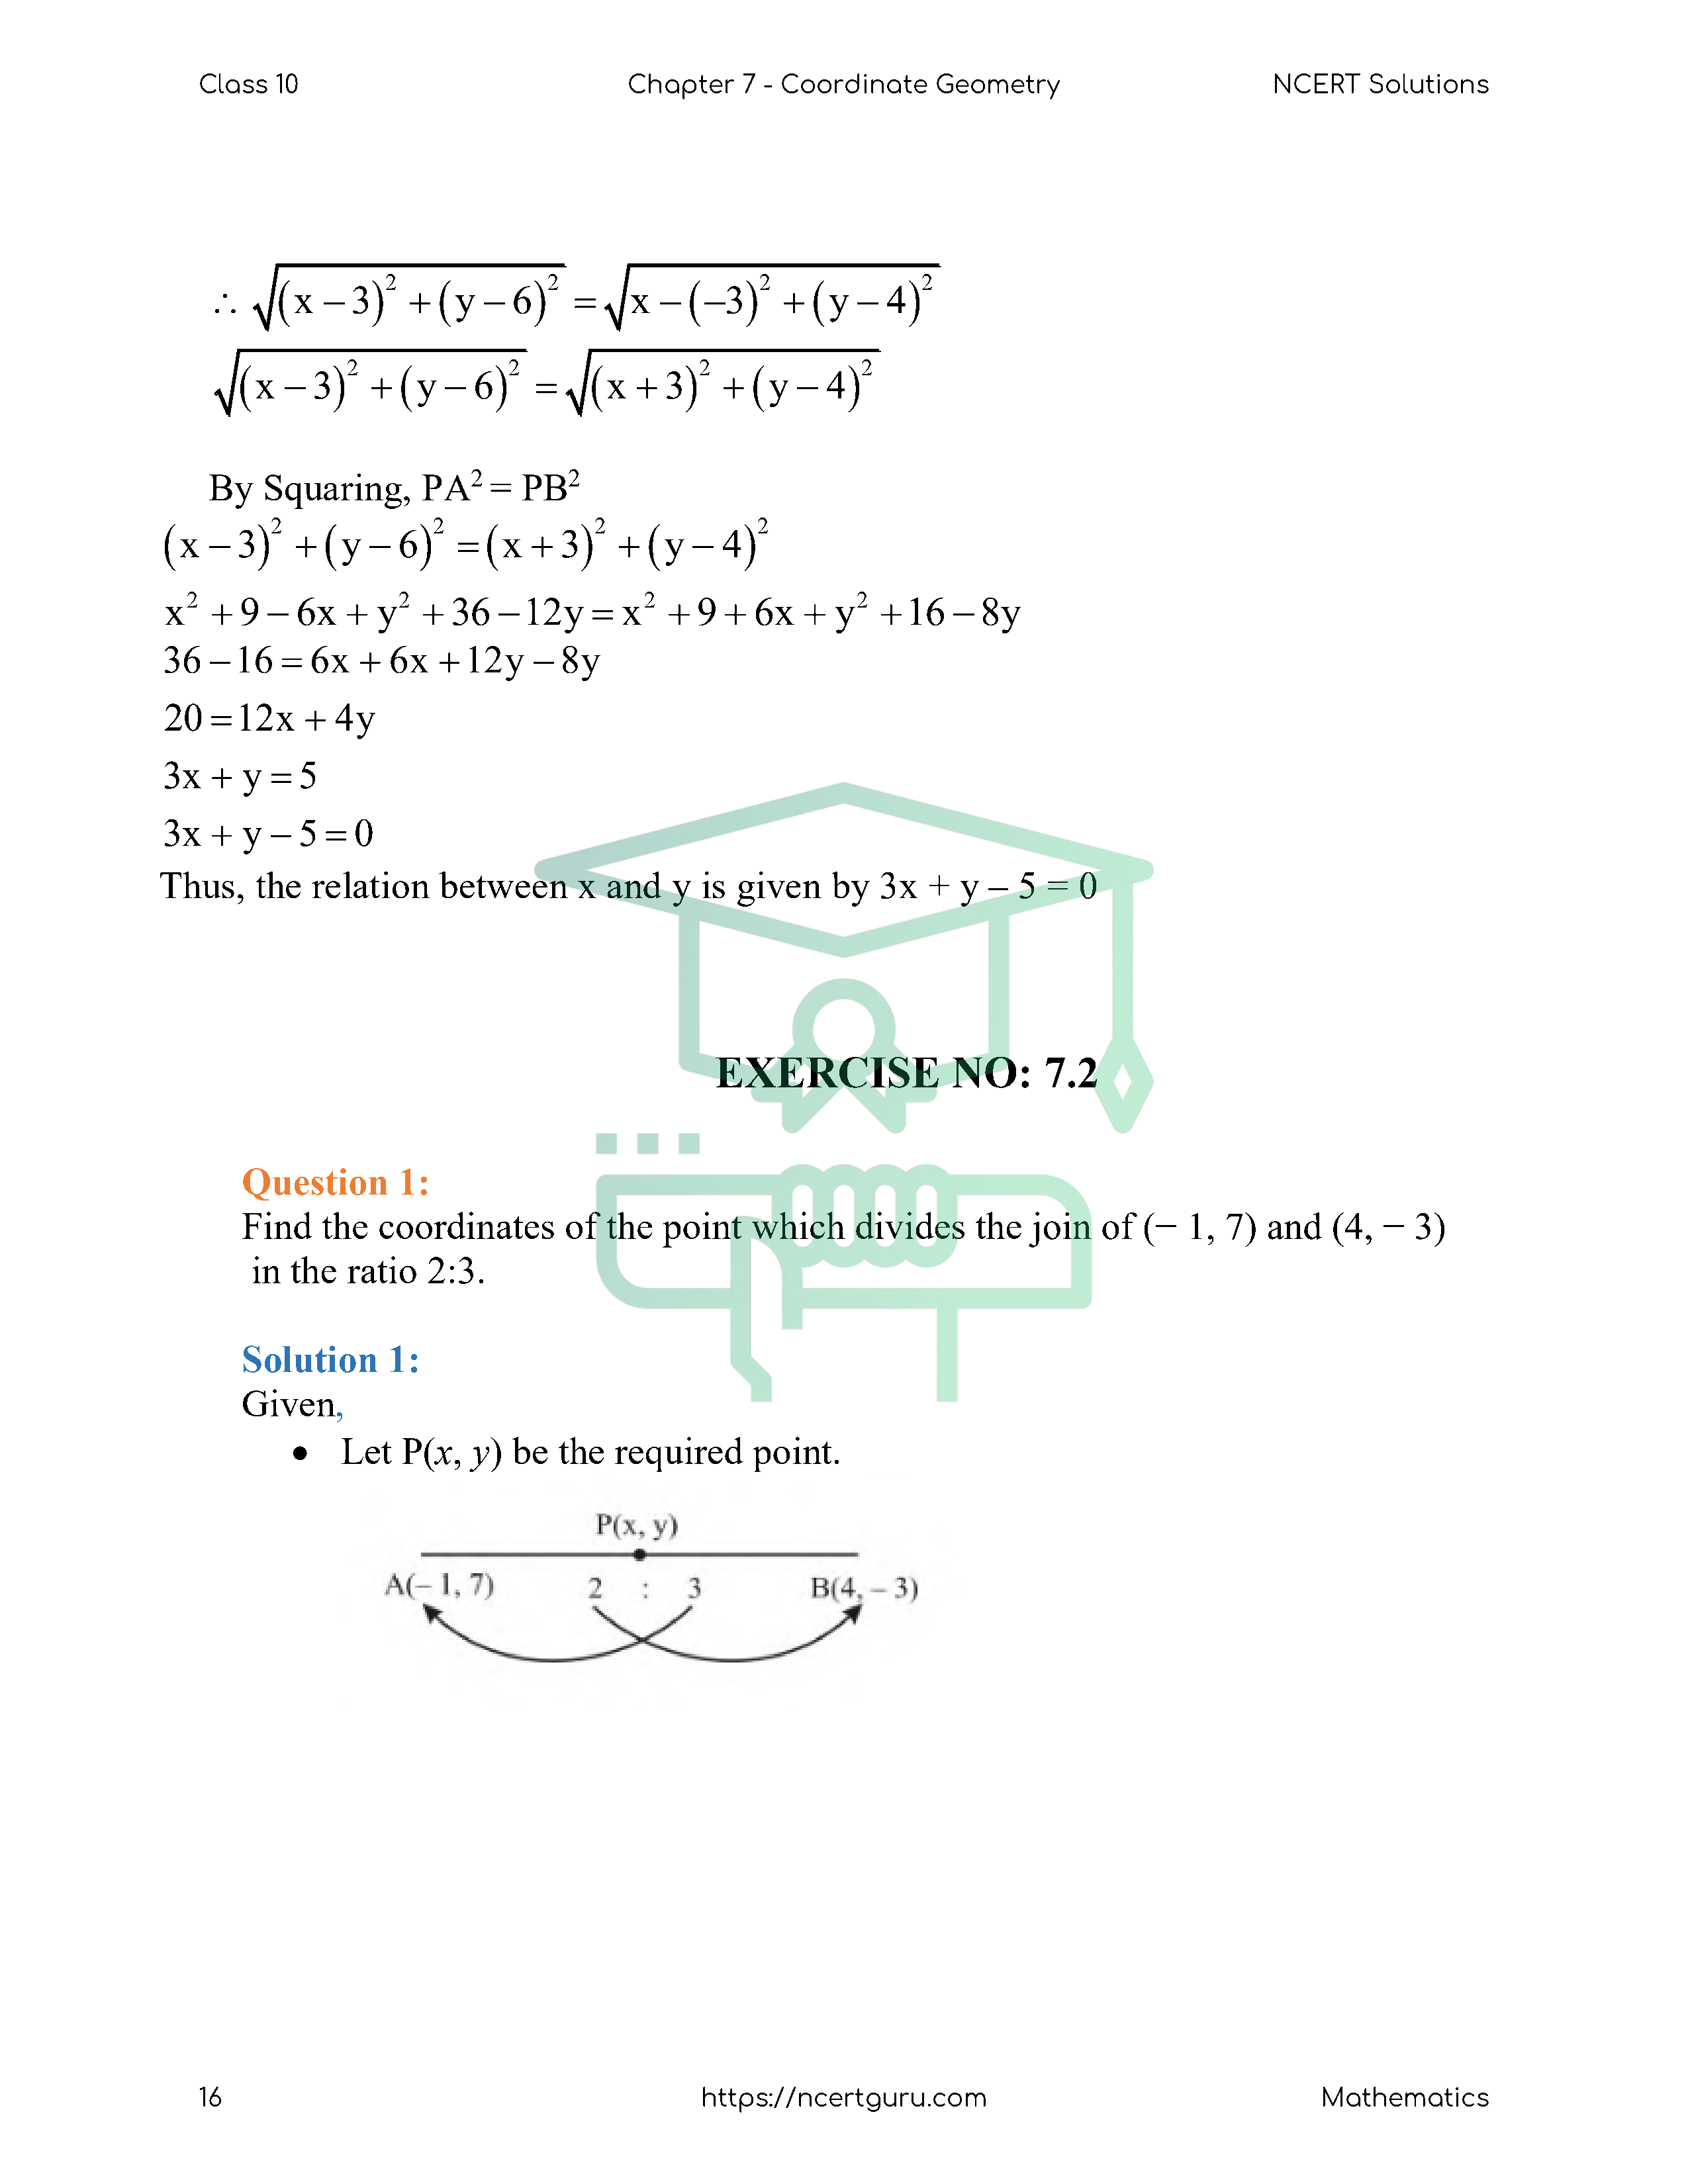 NCERT Solutions for Class 10 Maths Chapter 7